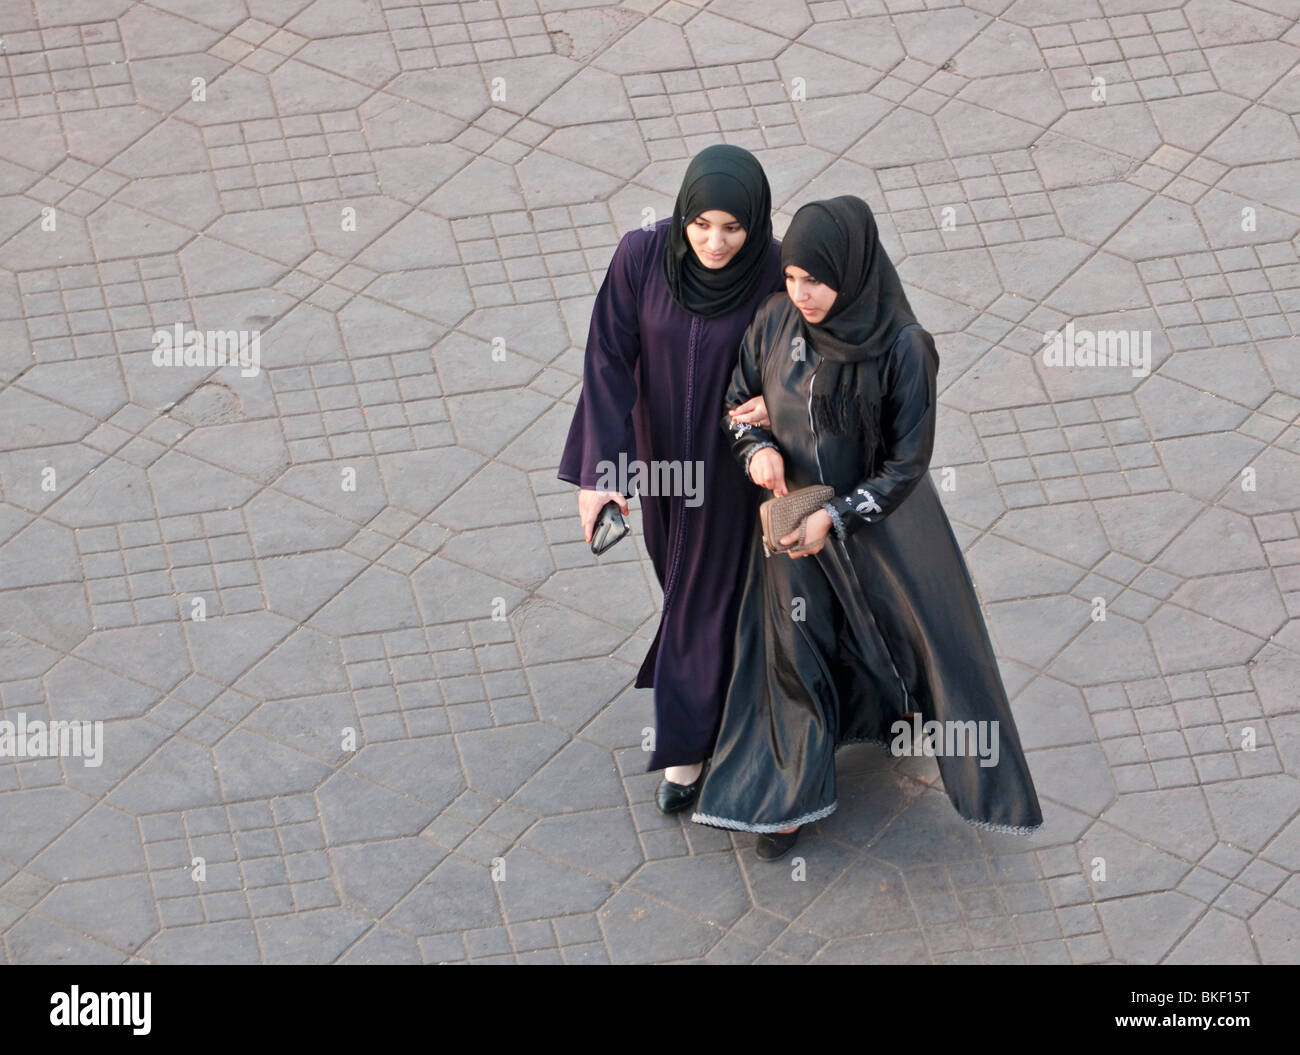 Two women walking in place Jemaa el-Fna in Marrakech, Morocco Stock Photo